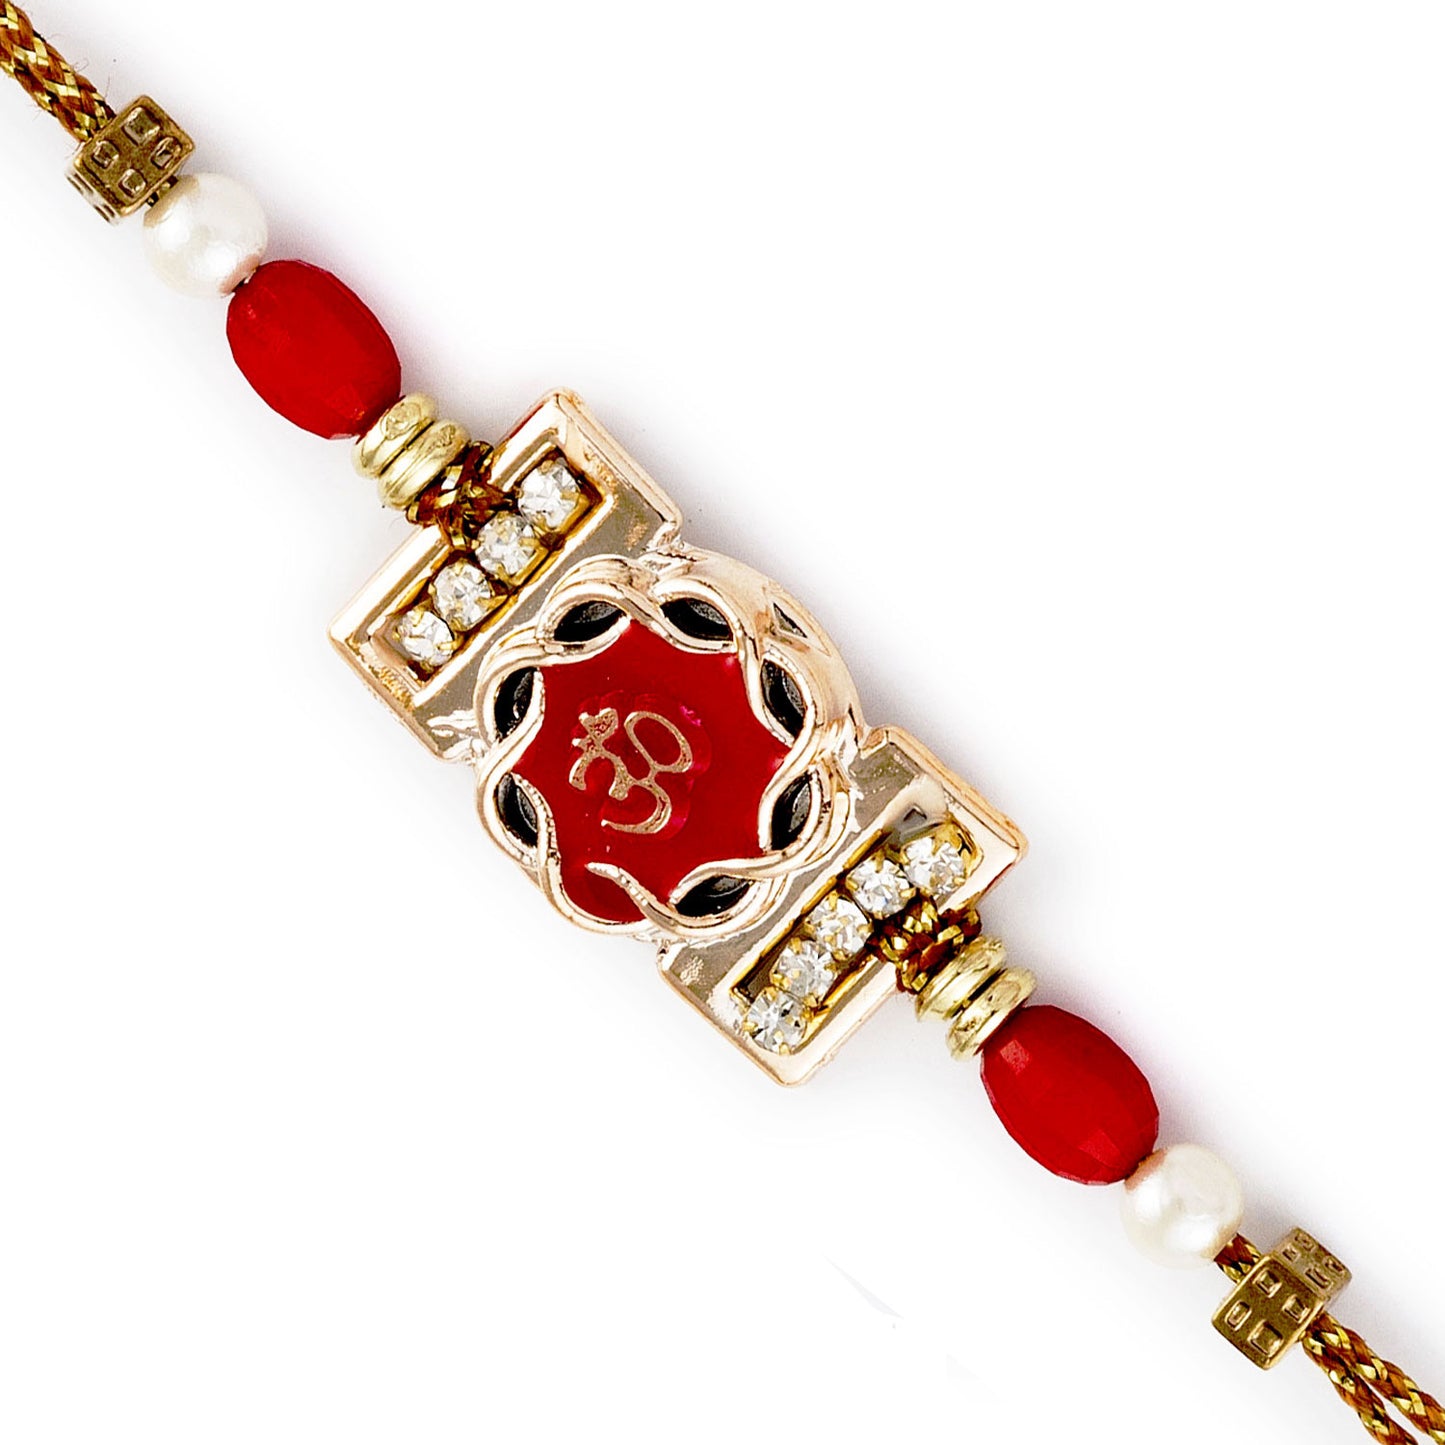 Aapno Rajasthan Red & White Beads OM Motif Rakhi - Default Title (RJ17283)